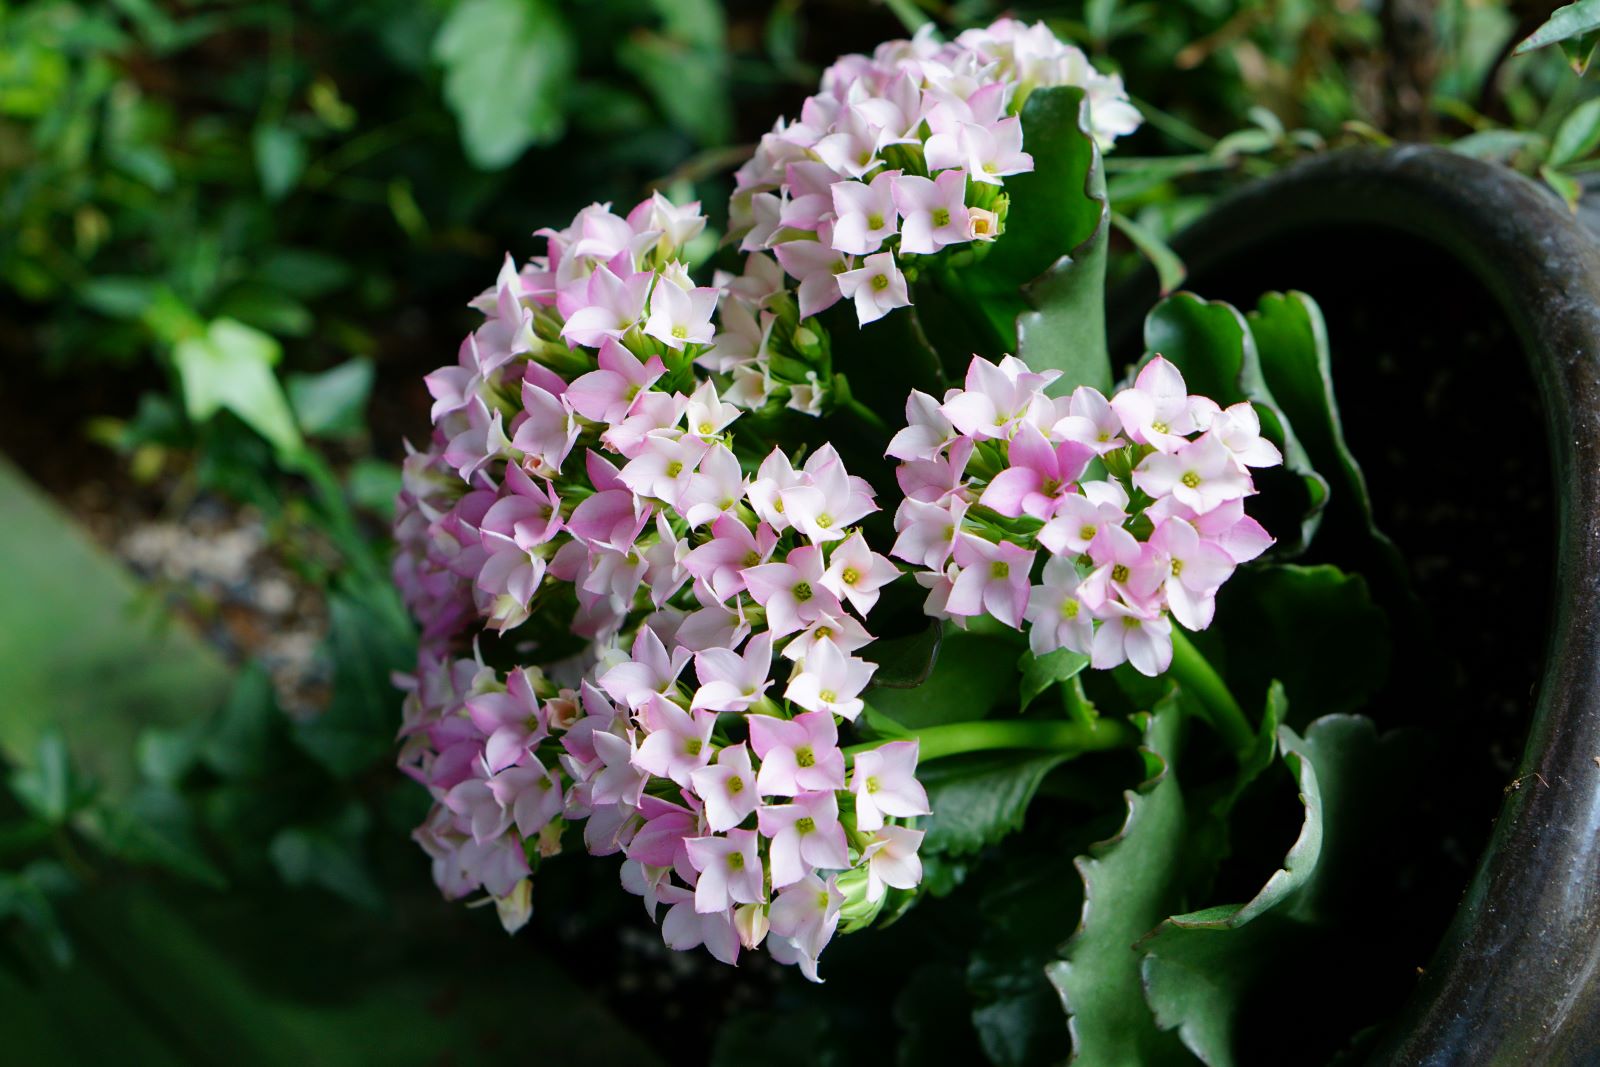 흰색에 엷은 분홍빛이 감도는 꽃&#44; 수국 닮은 꽃&#44;